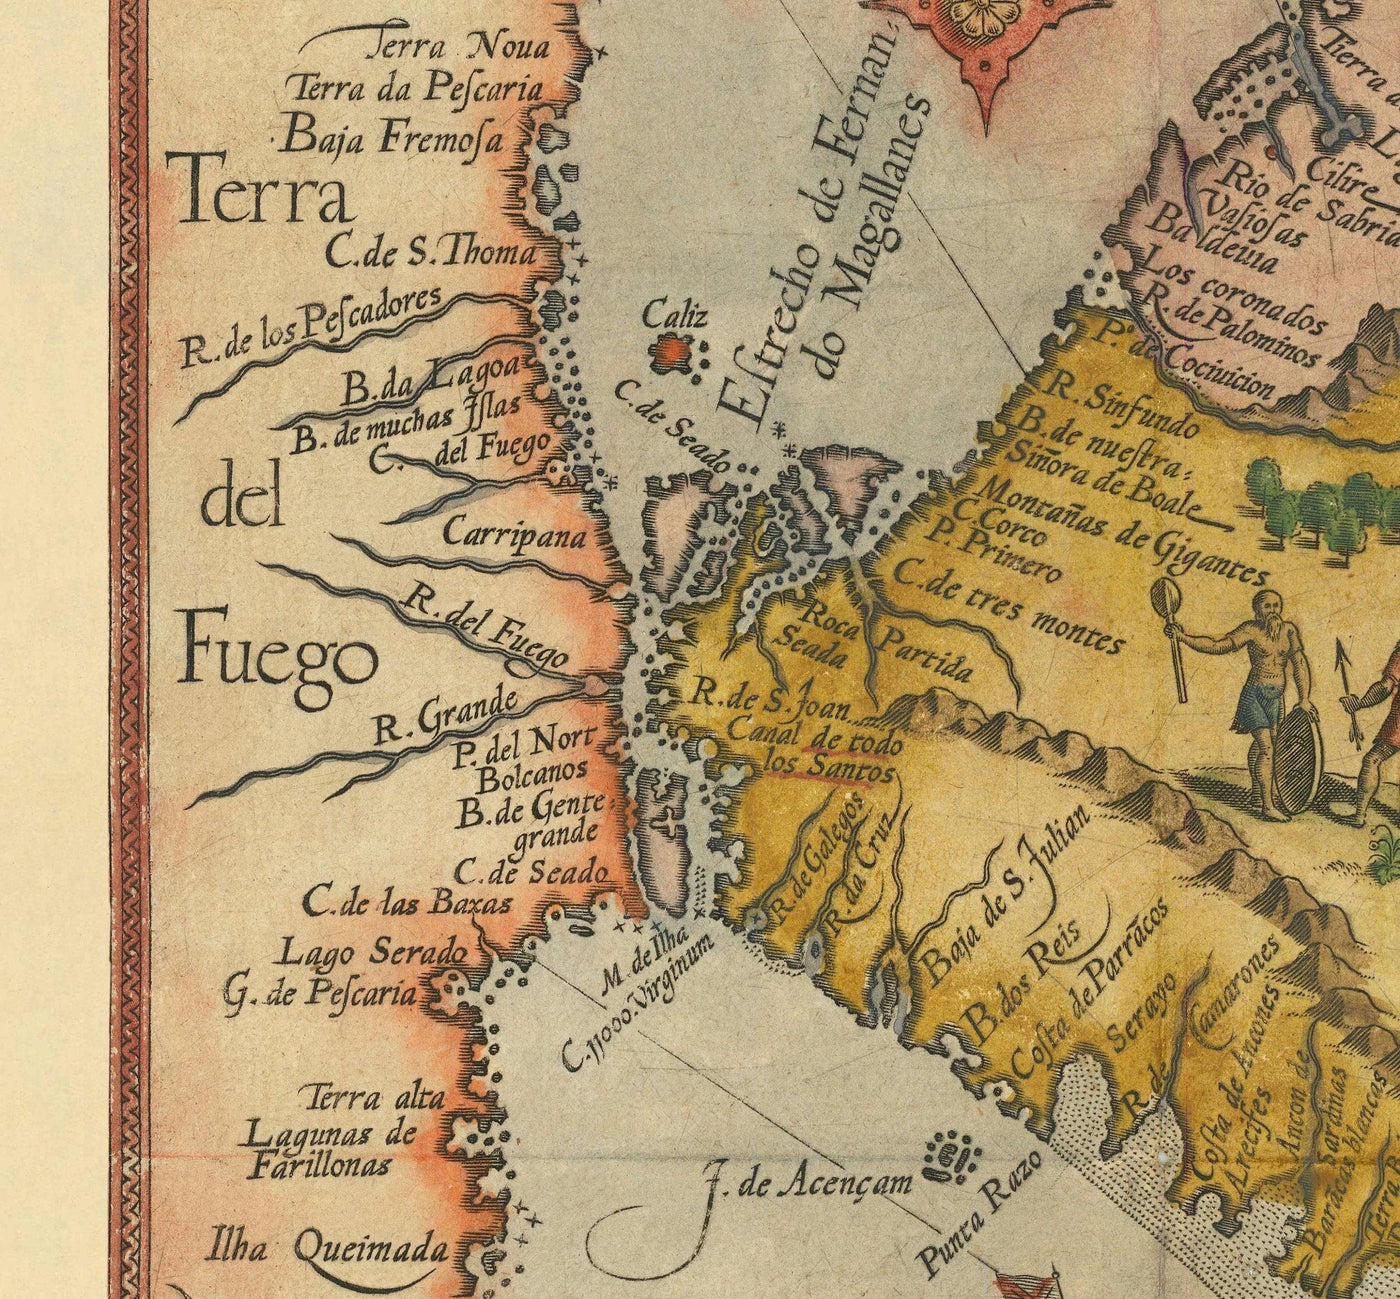 Alte Karte von Südamerika von Linschoten, 1596 - Brasilien, Peru, Chile, Karibik, Florida, Spanische & portugiesische Kolonien